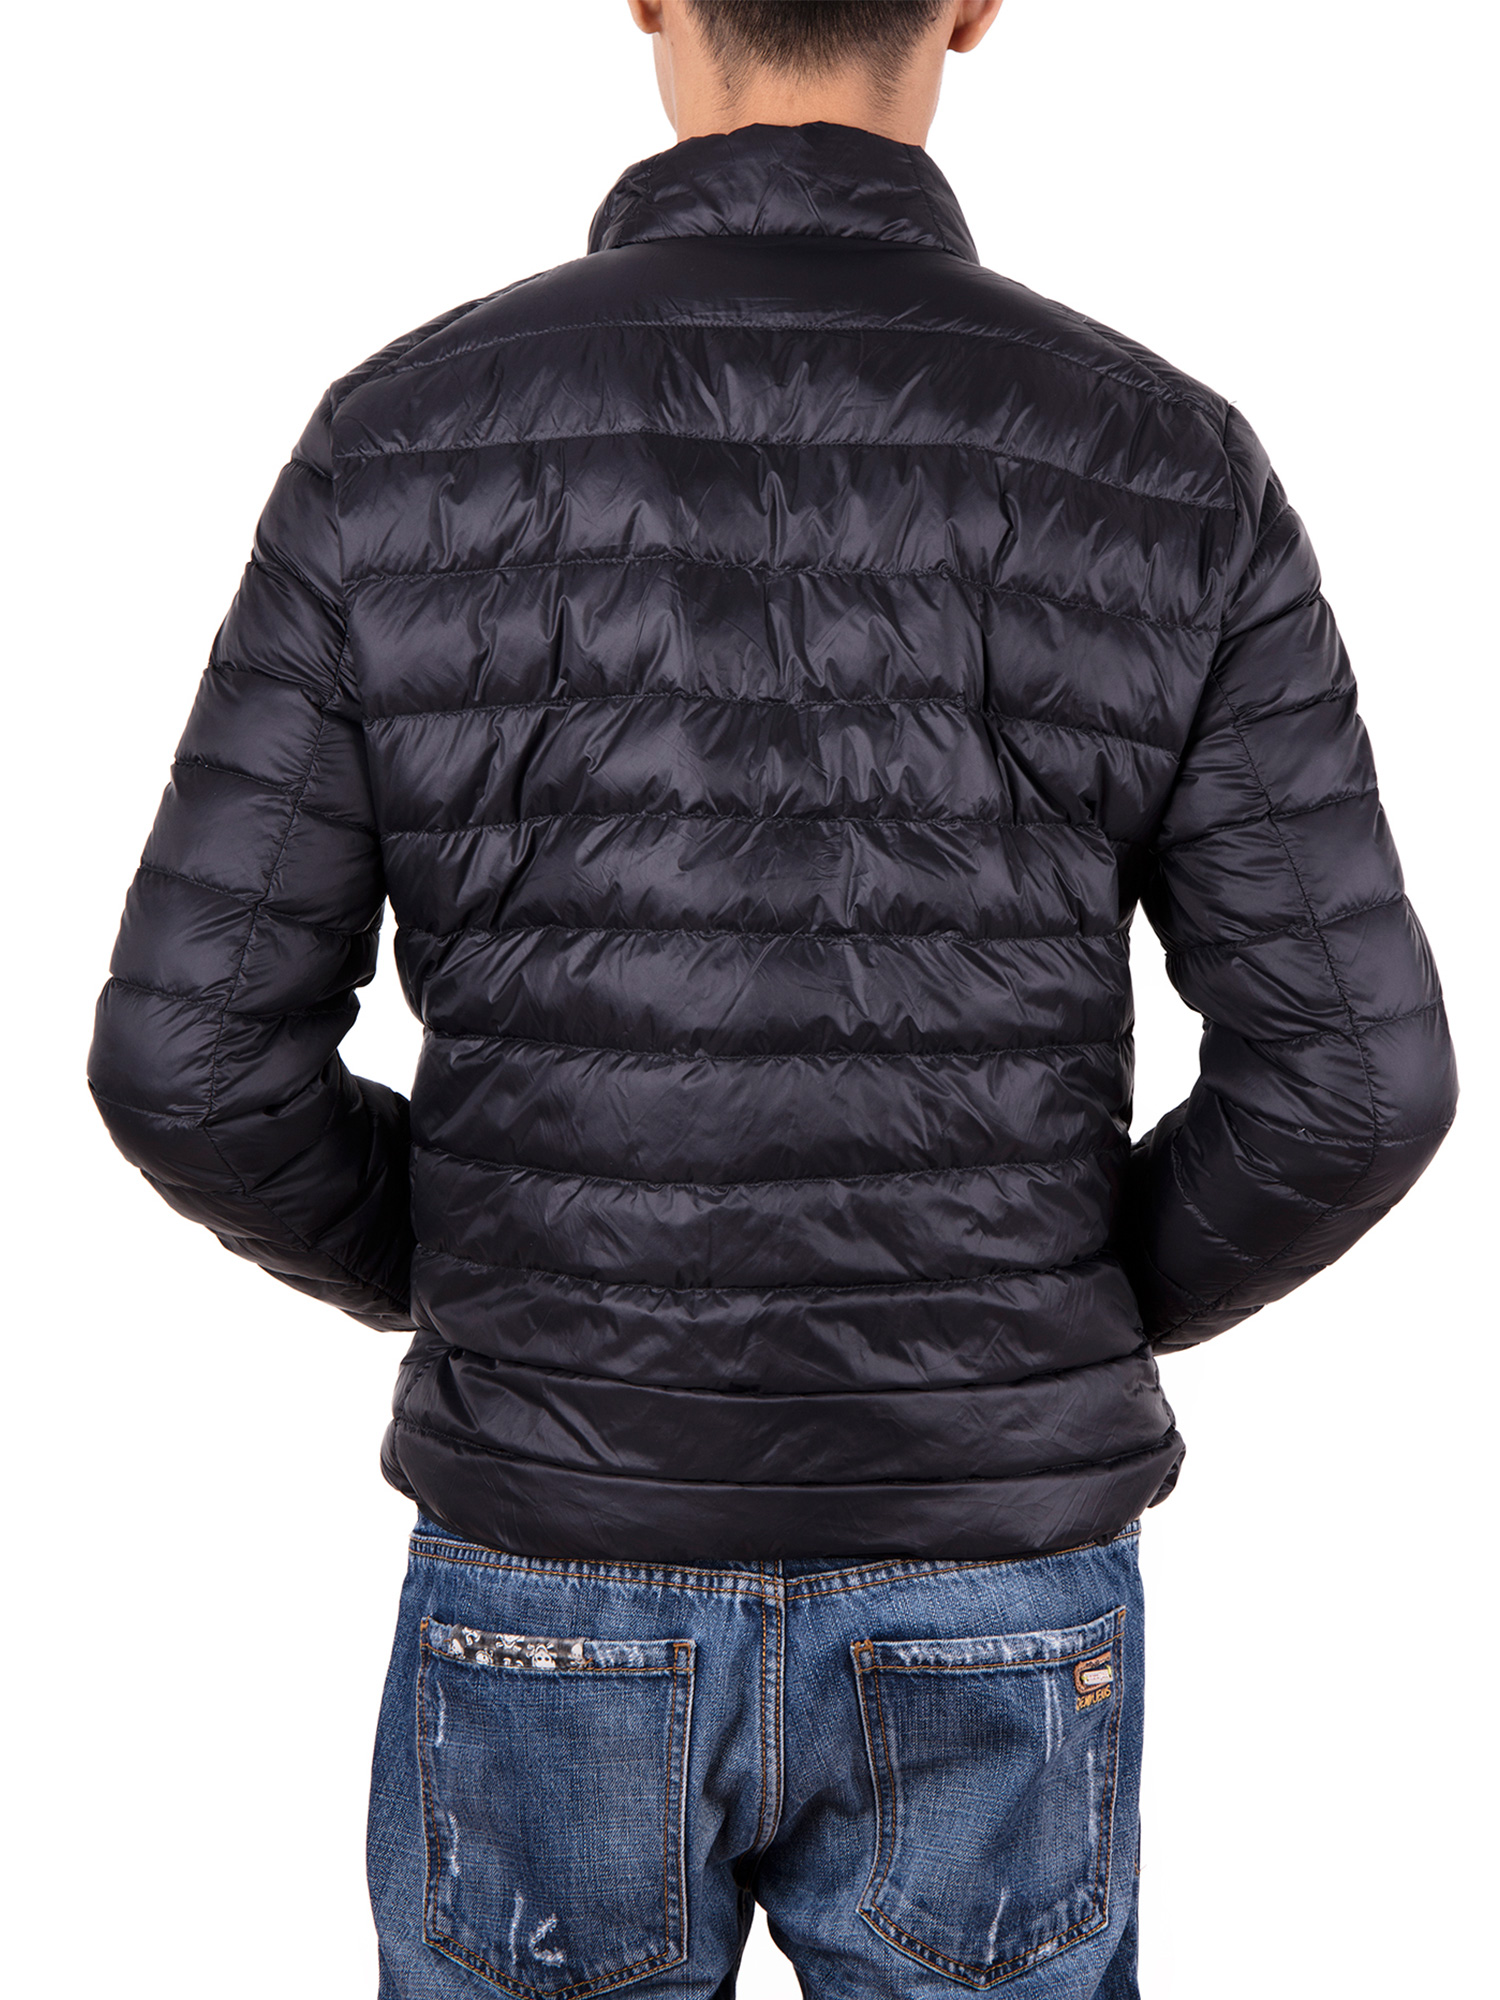 Men Down Jacket Outwear Puffer Coats Casual Zip Up Windbreaker Lightweight Winter Jackets Black - image 4 of 8